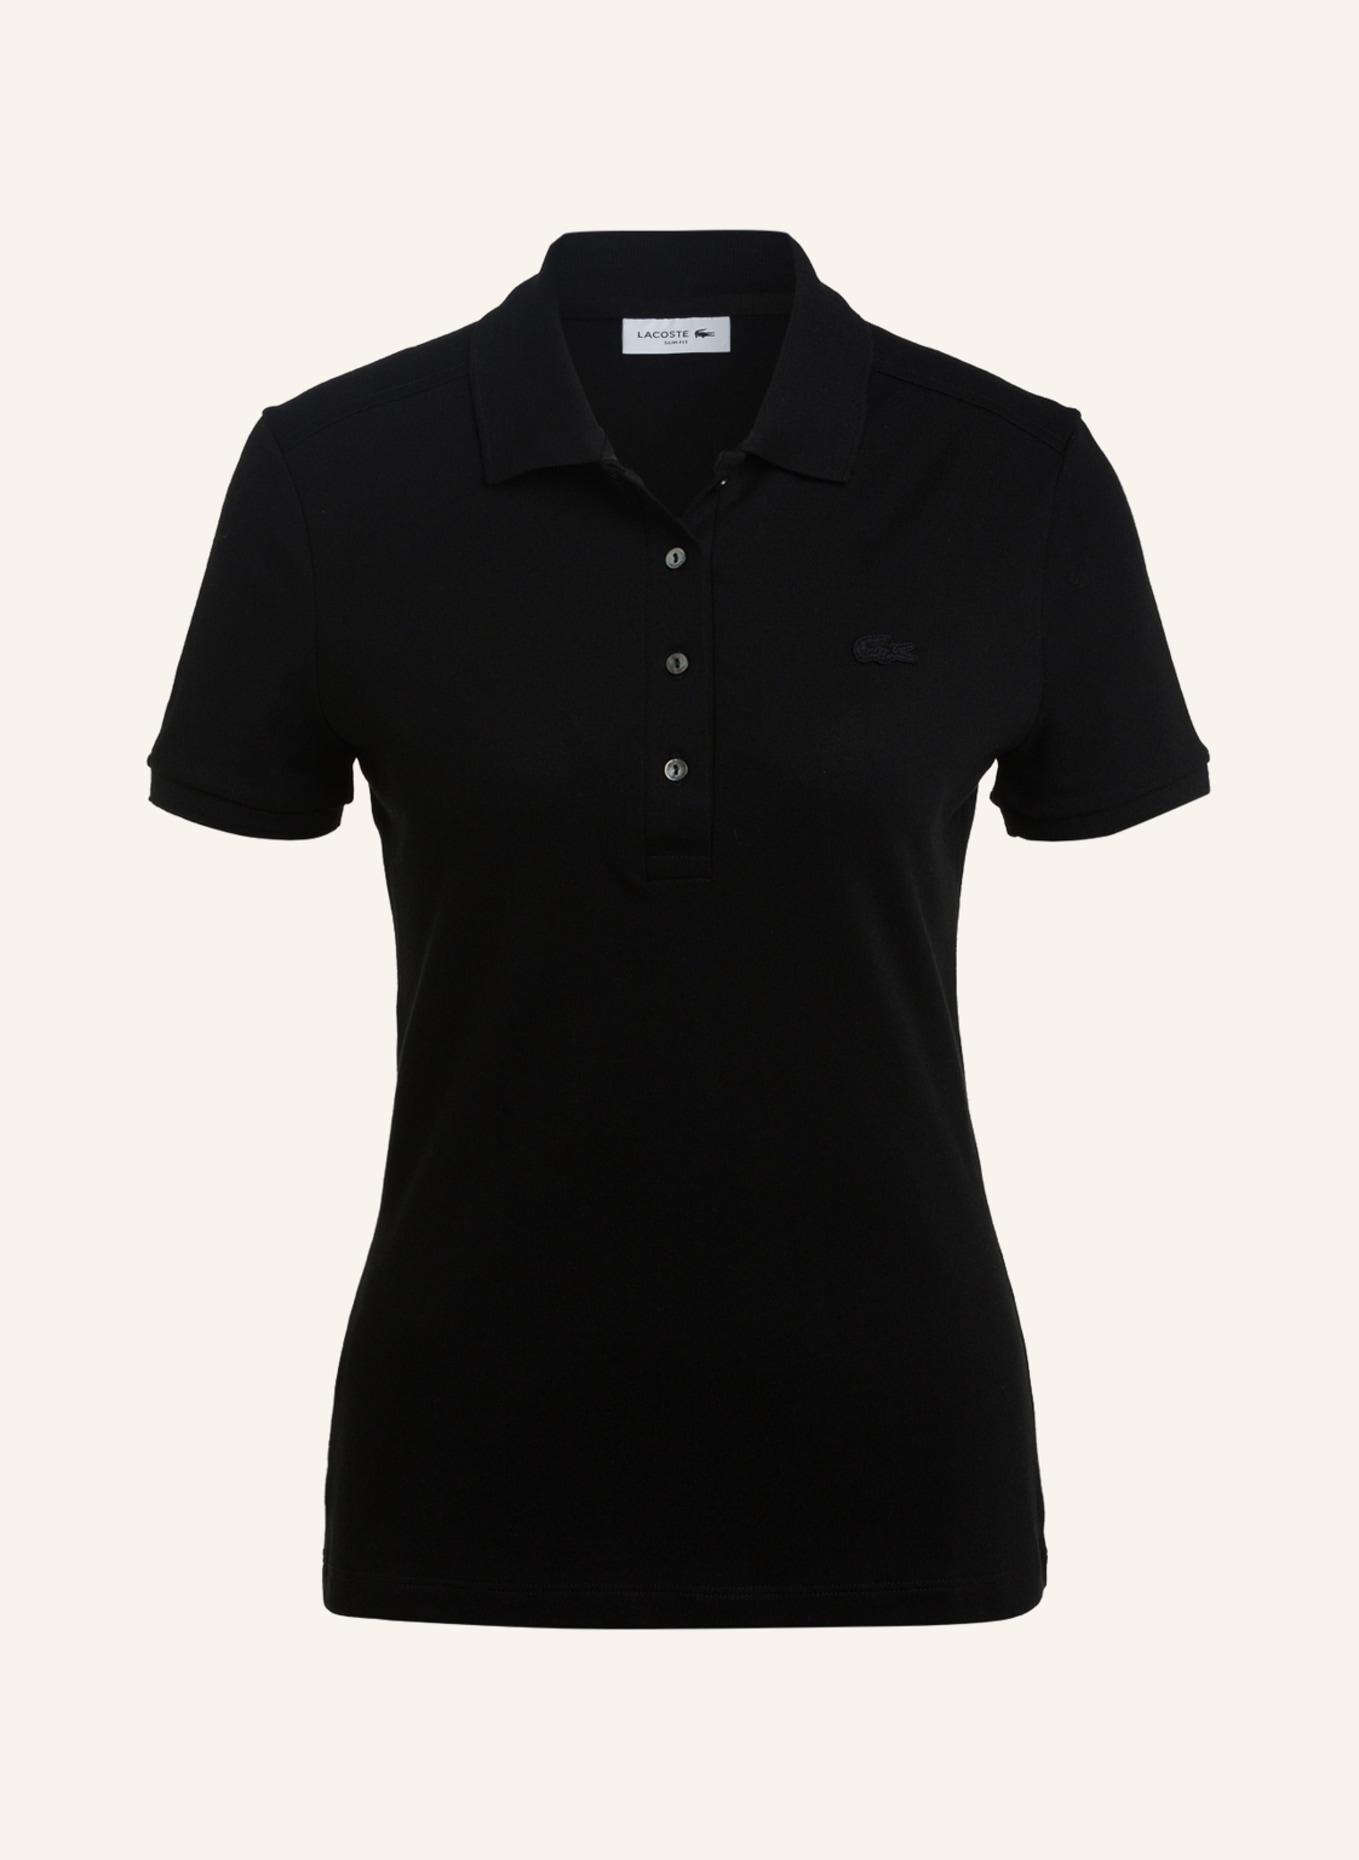 LACOSTE Piqué-Poloshirt Slim Fit, Farbe: SCHWARZ (Bild 1)